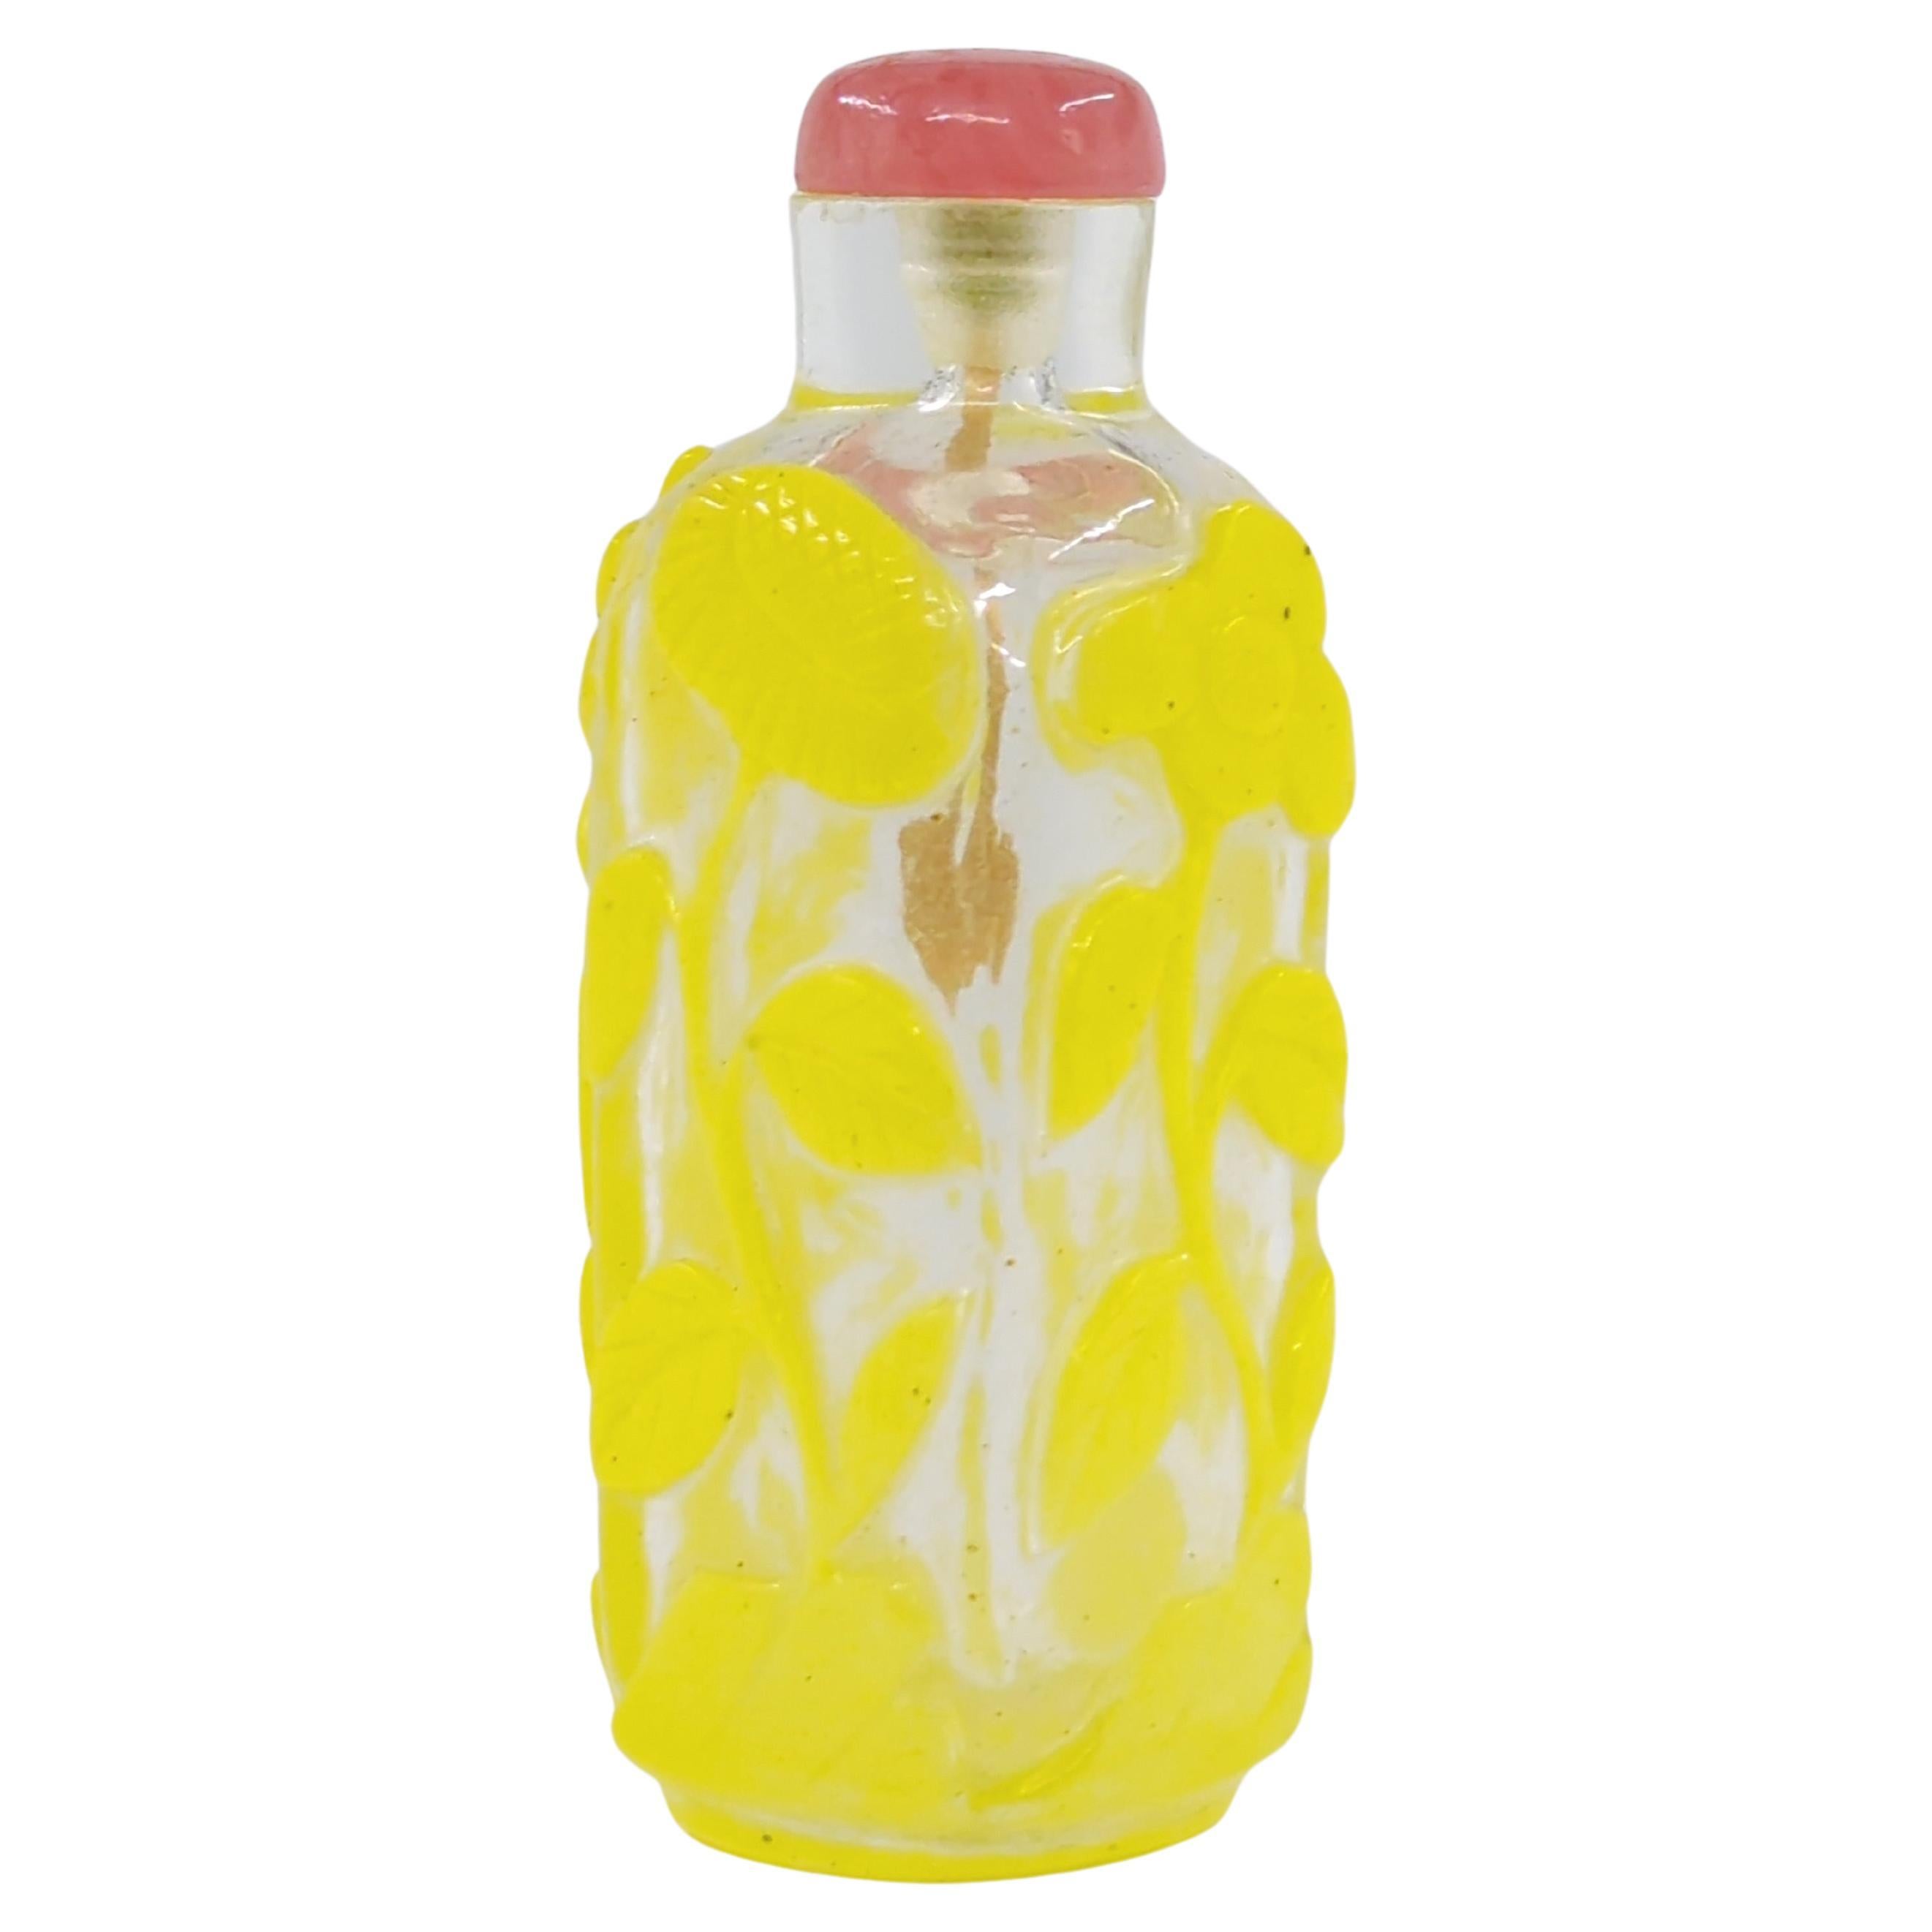 Anciennes fleurs de bouteilles de parfum chinoises en verre jaune recouvertes de verre jaune, fin 20e siècle